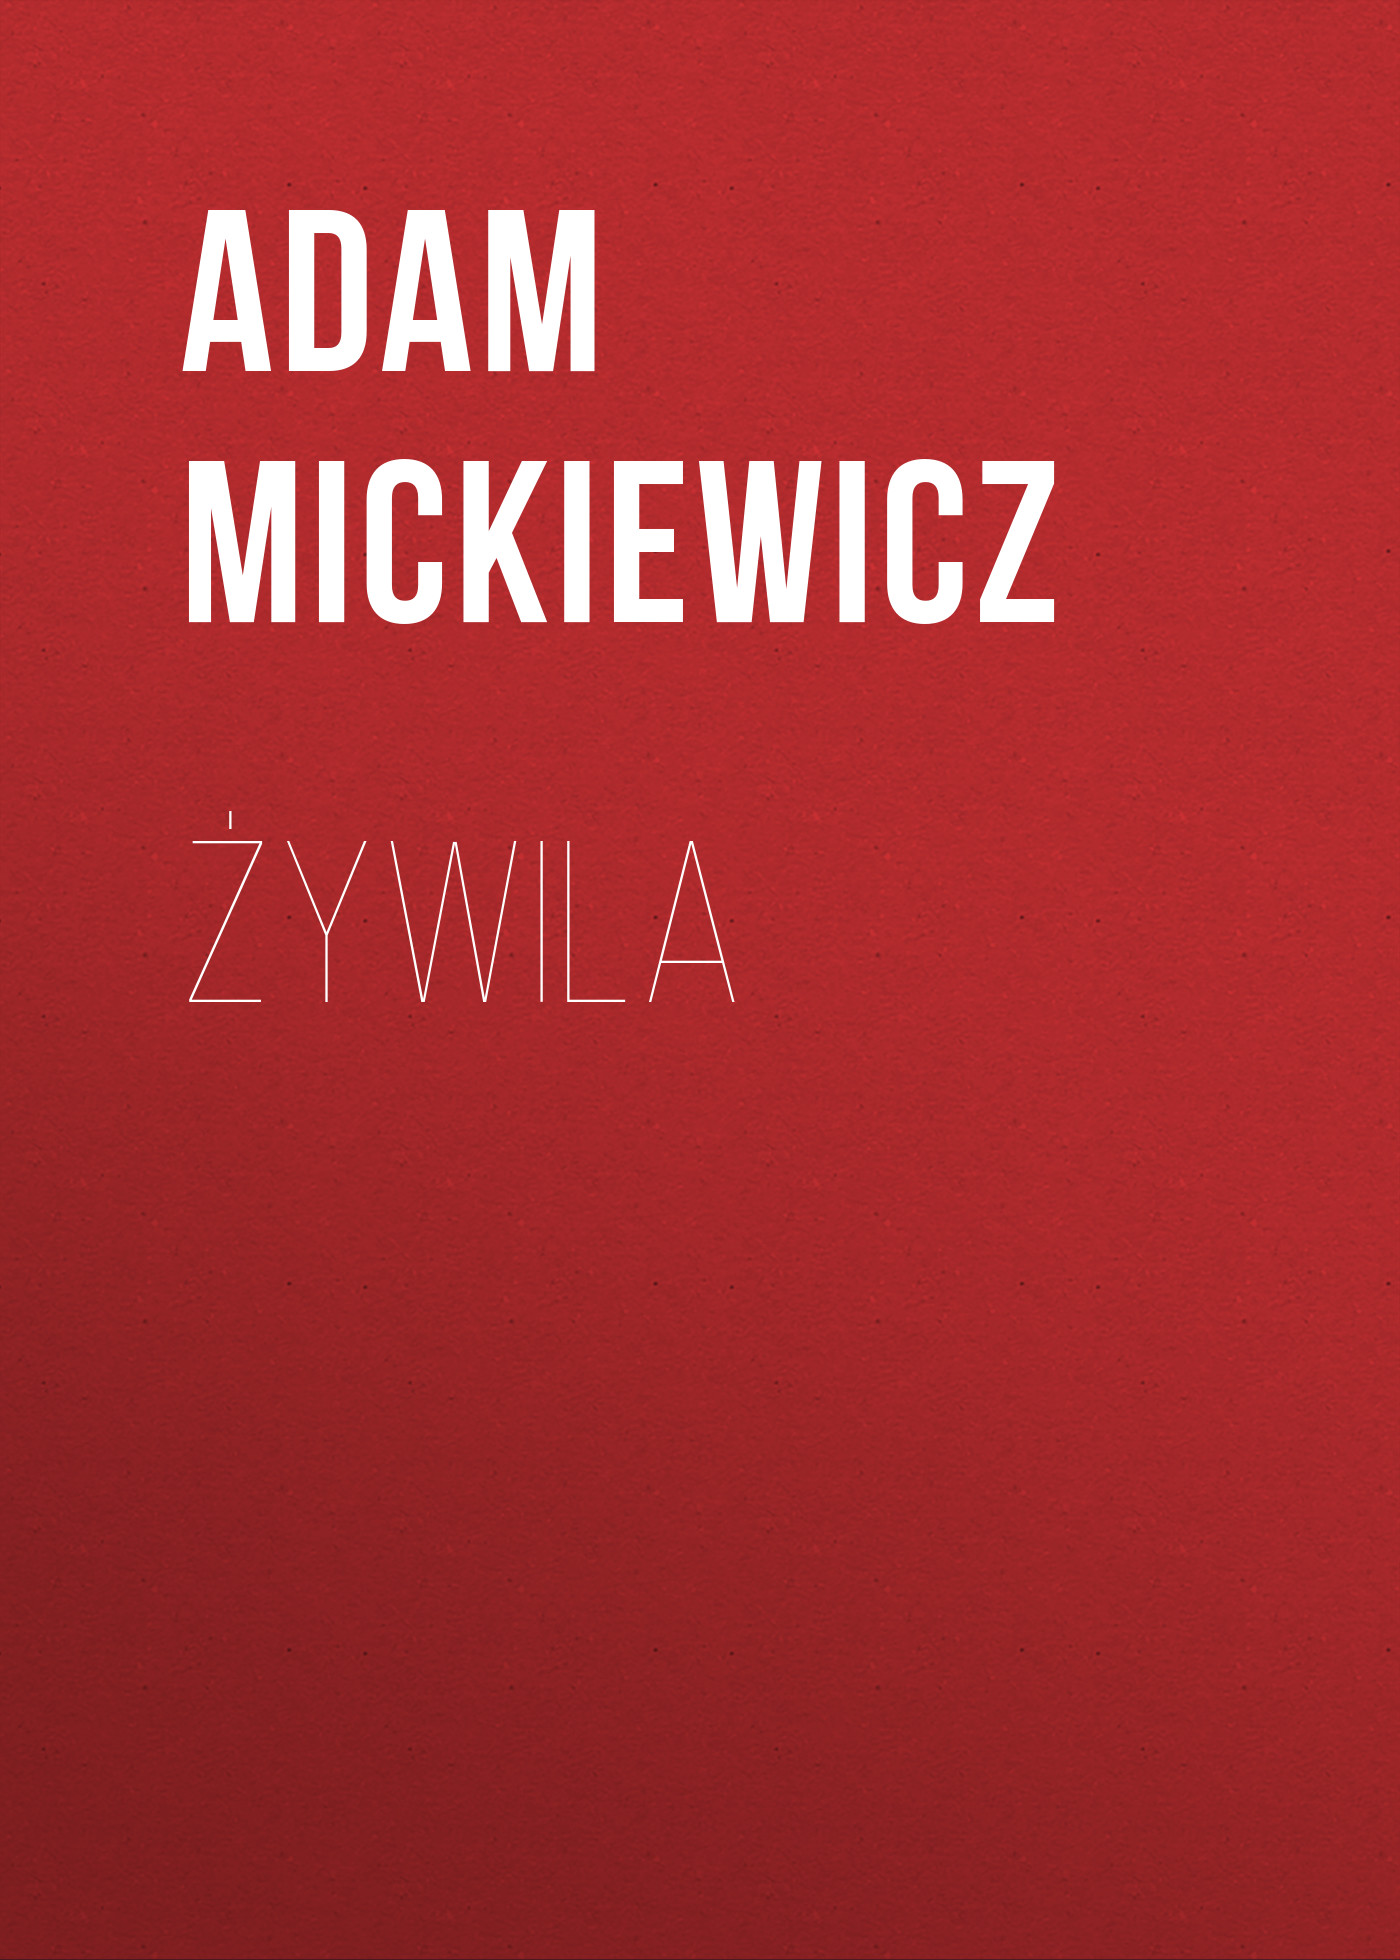 Книга Żywila из серии , созданная Adam Mickiewicz, может относится к жанру Зарубежная классика, Литература 19 века, Зарубежная старинная литература. Стоимость электронной книги Żywila с идентификатором 42627491 составляет 0 руб.